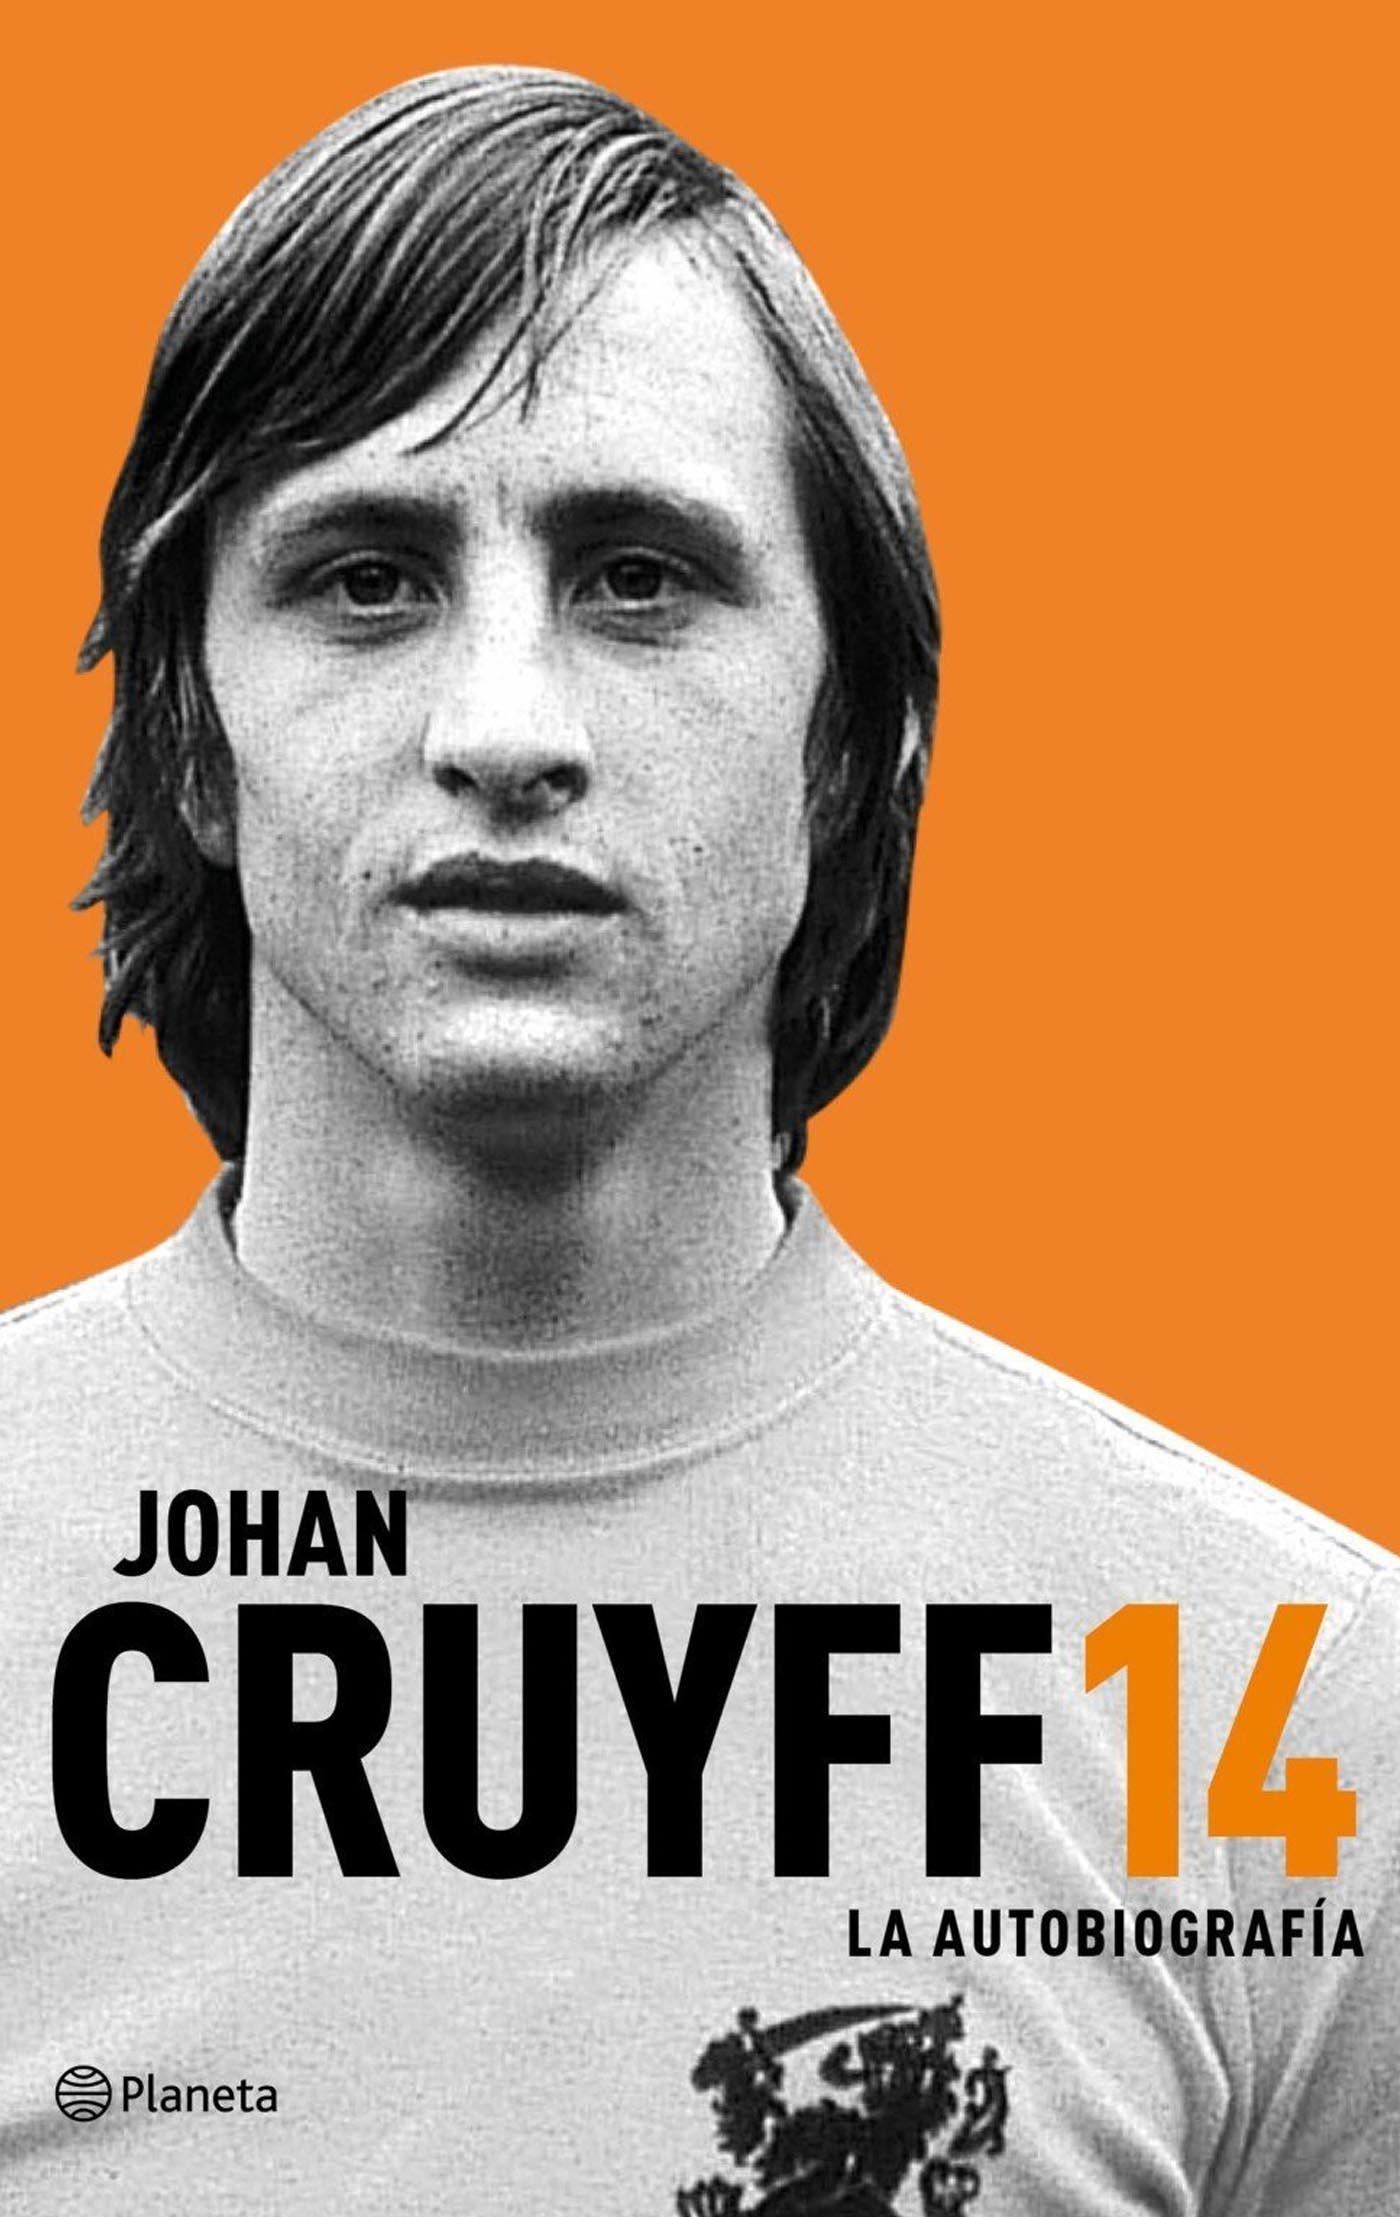 Johan Cruyff 14 La Autobiografía